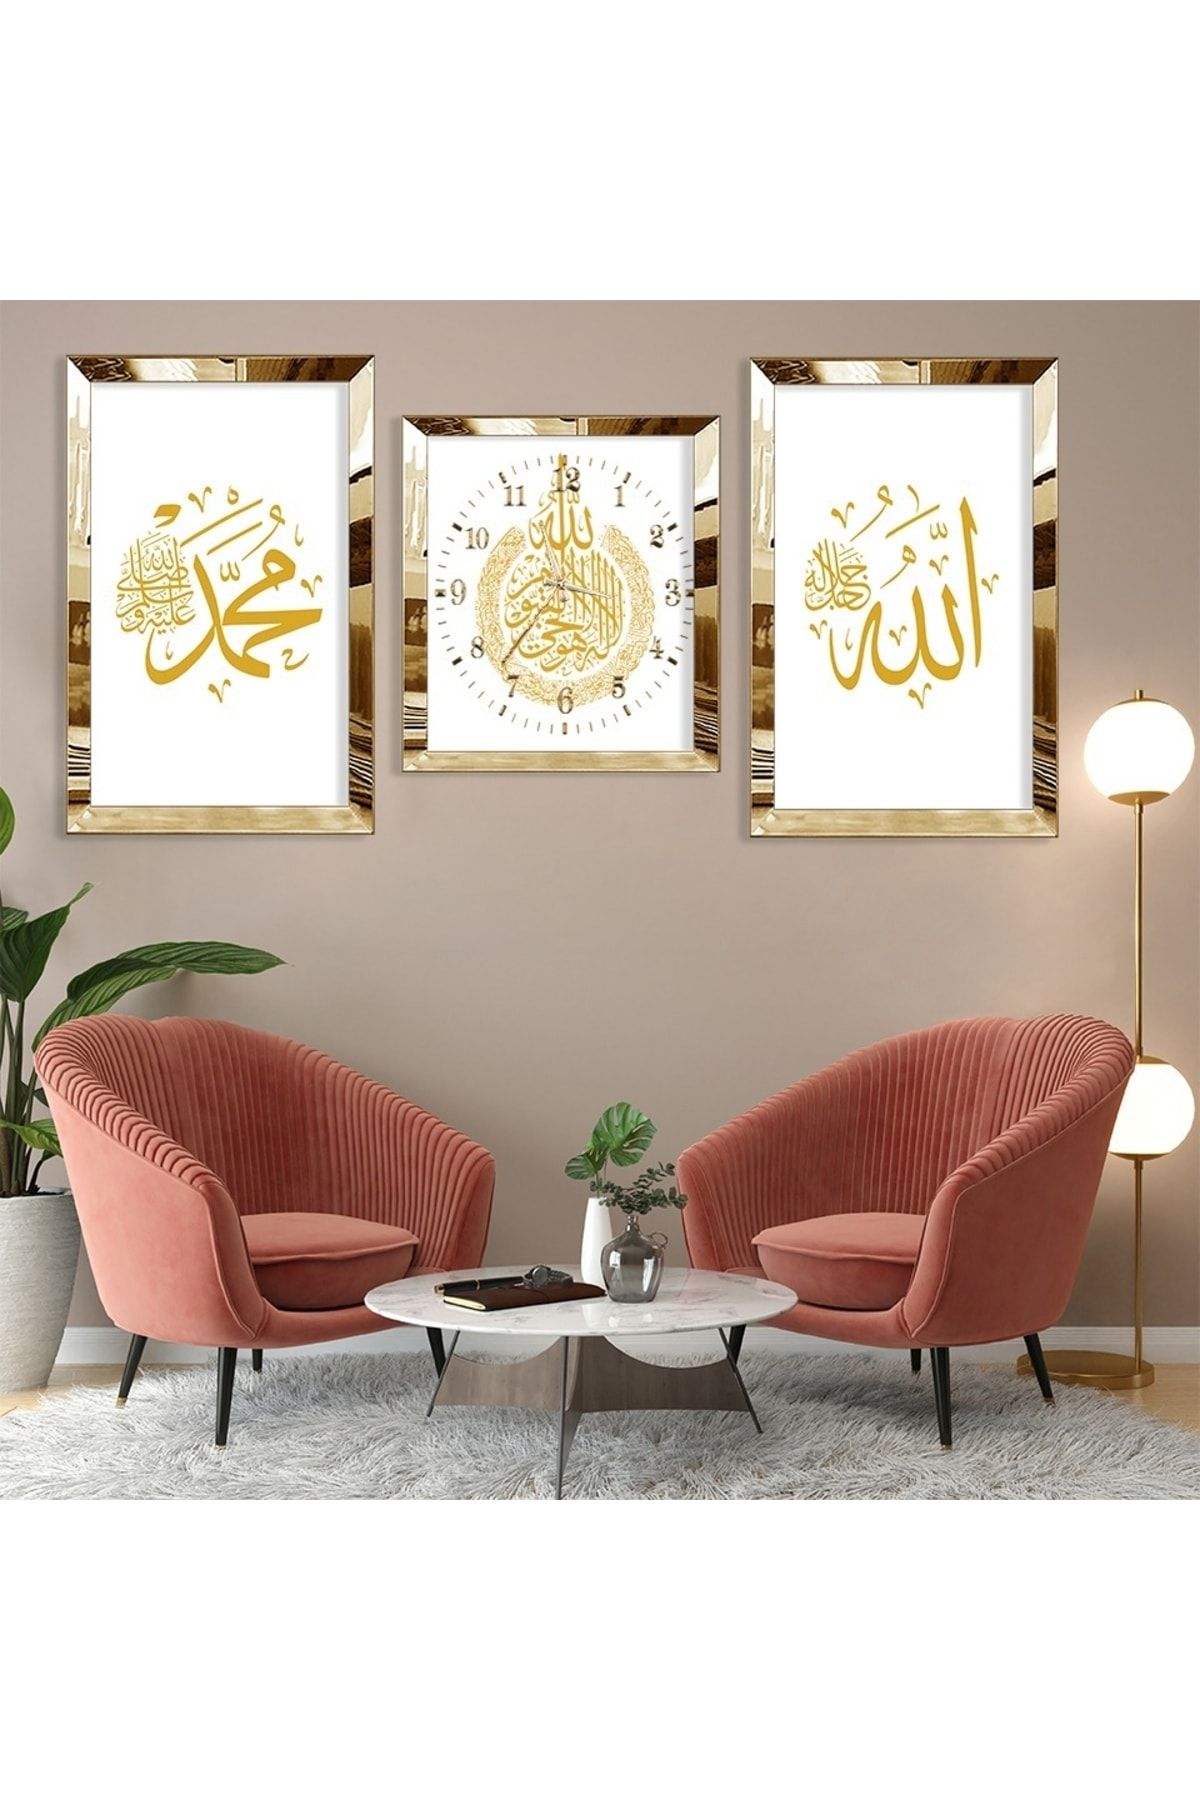 Zevahir Mobilya Dekorasyon Hz Muhammed Ve Allah Lafzı Gold Pleksi Kenar 3'lü Mdf Tablo Ve Saat Kombin